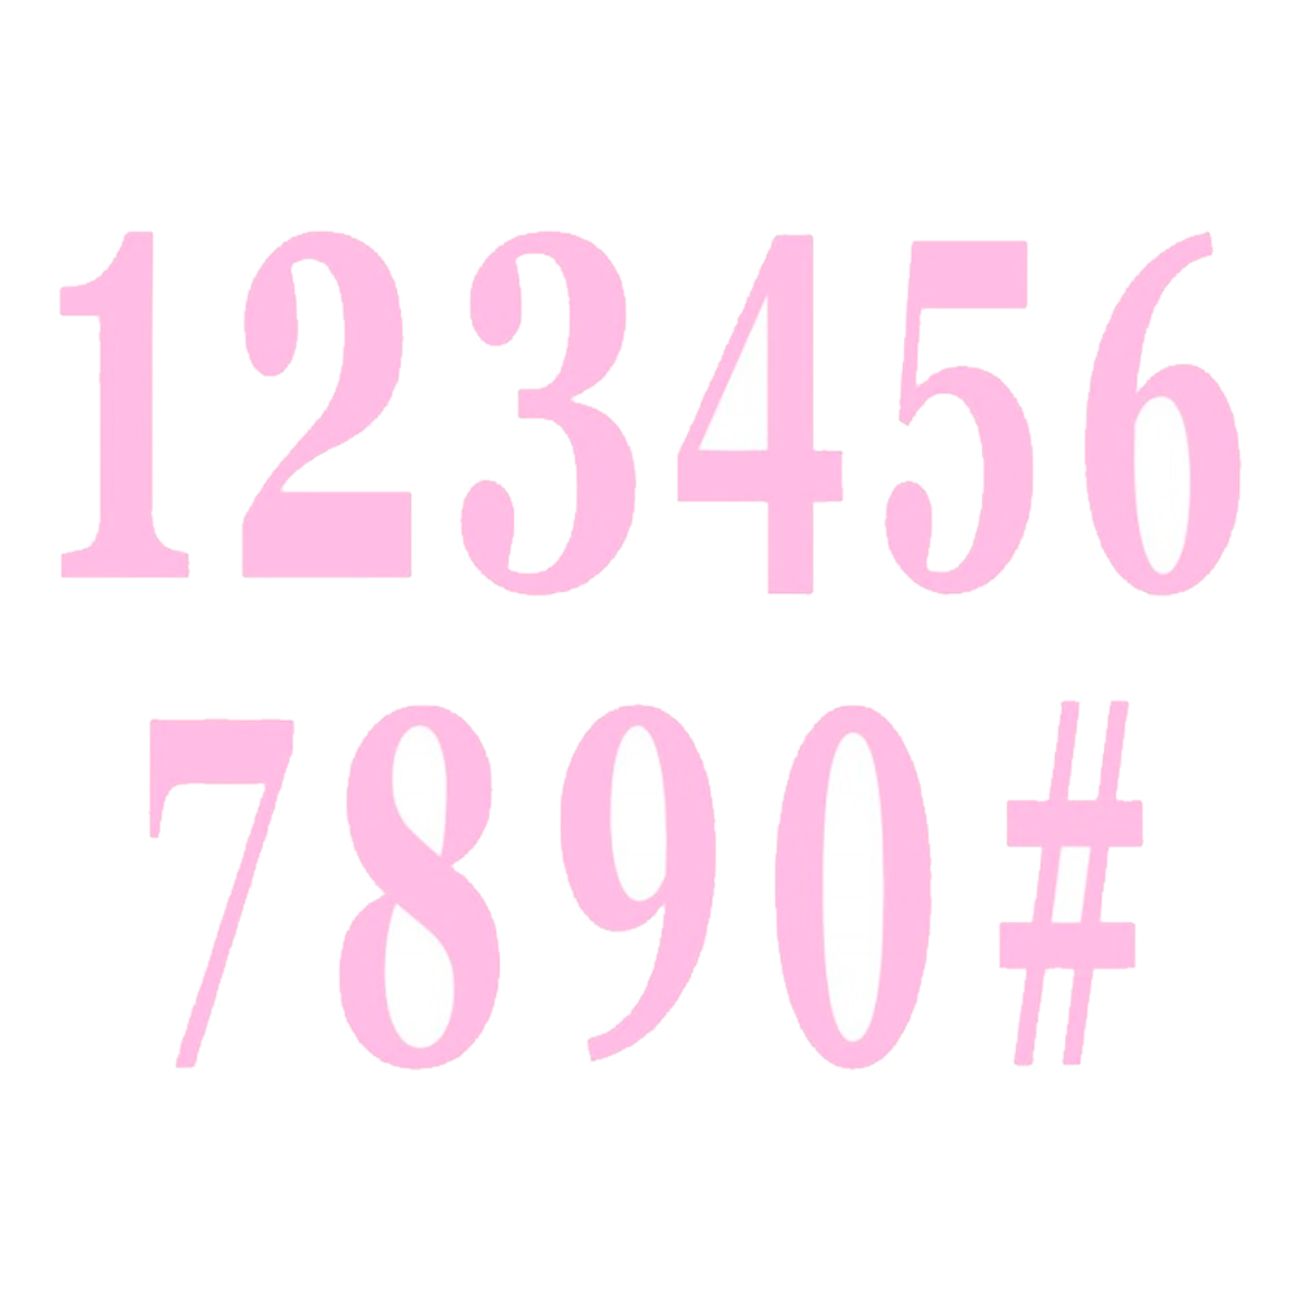 stora-stickers-siffror-92243-6